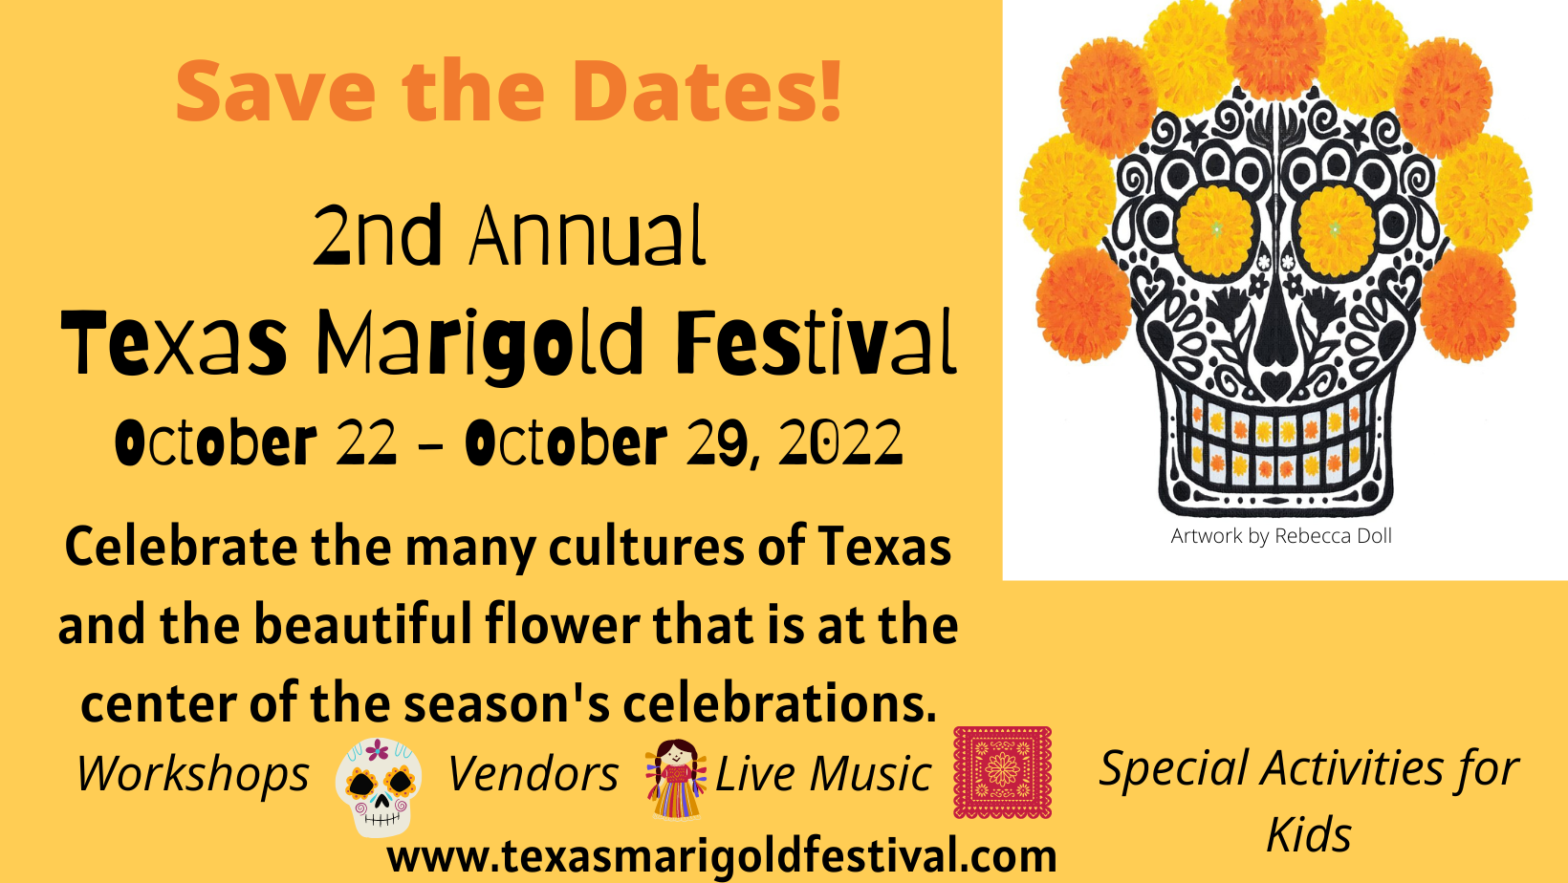 Texas Marigold Festival